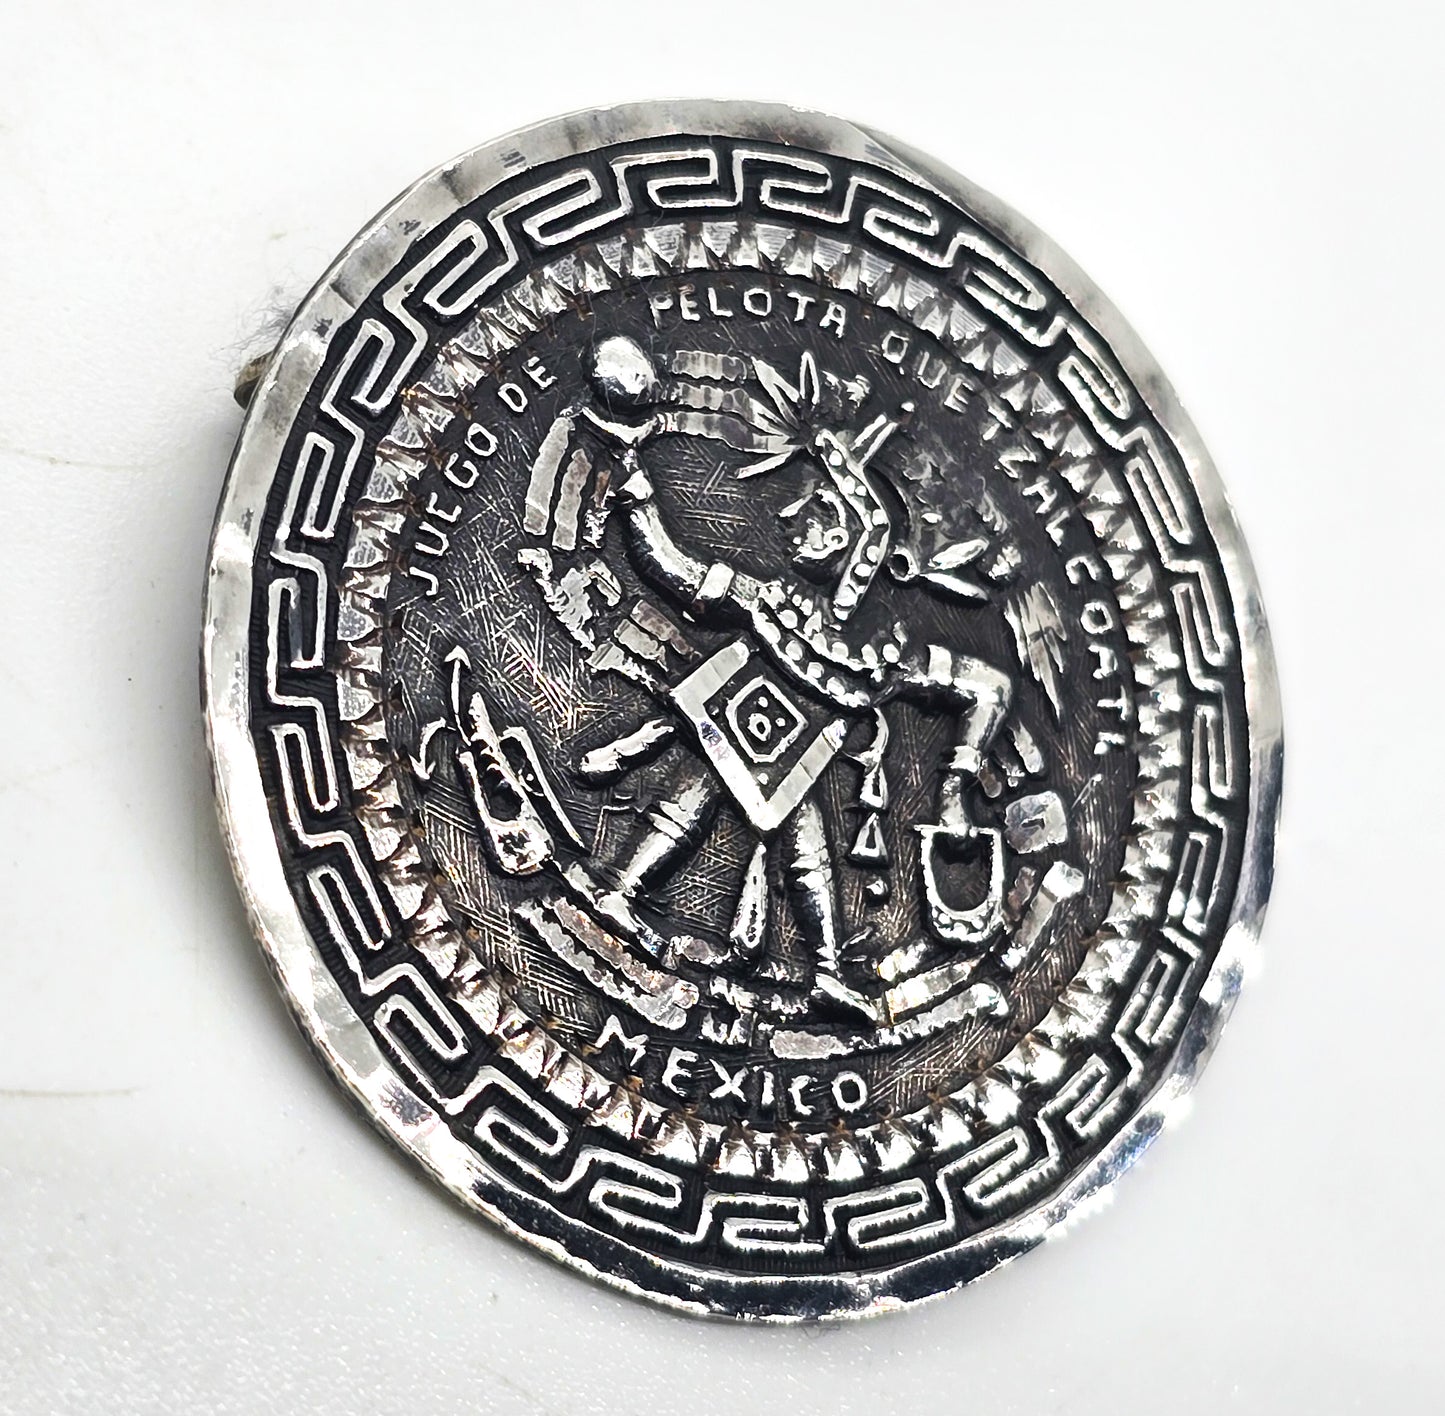 Aztec Juego de Pelota quetzalcoatl Vintage Mexican sterling silver Pendant brooch